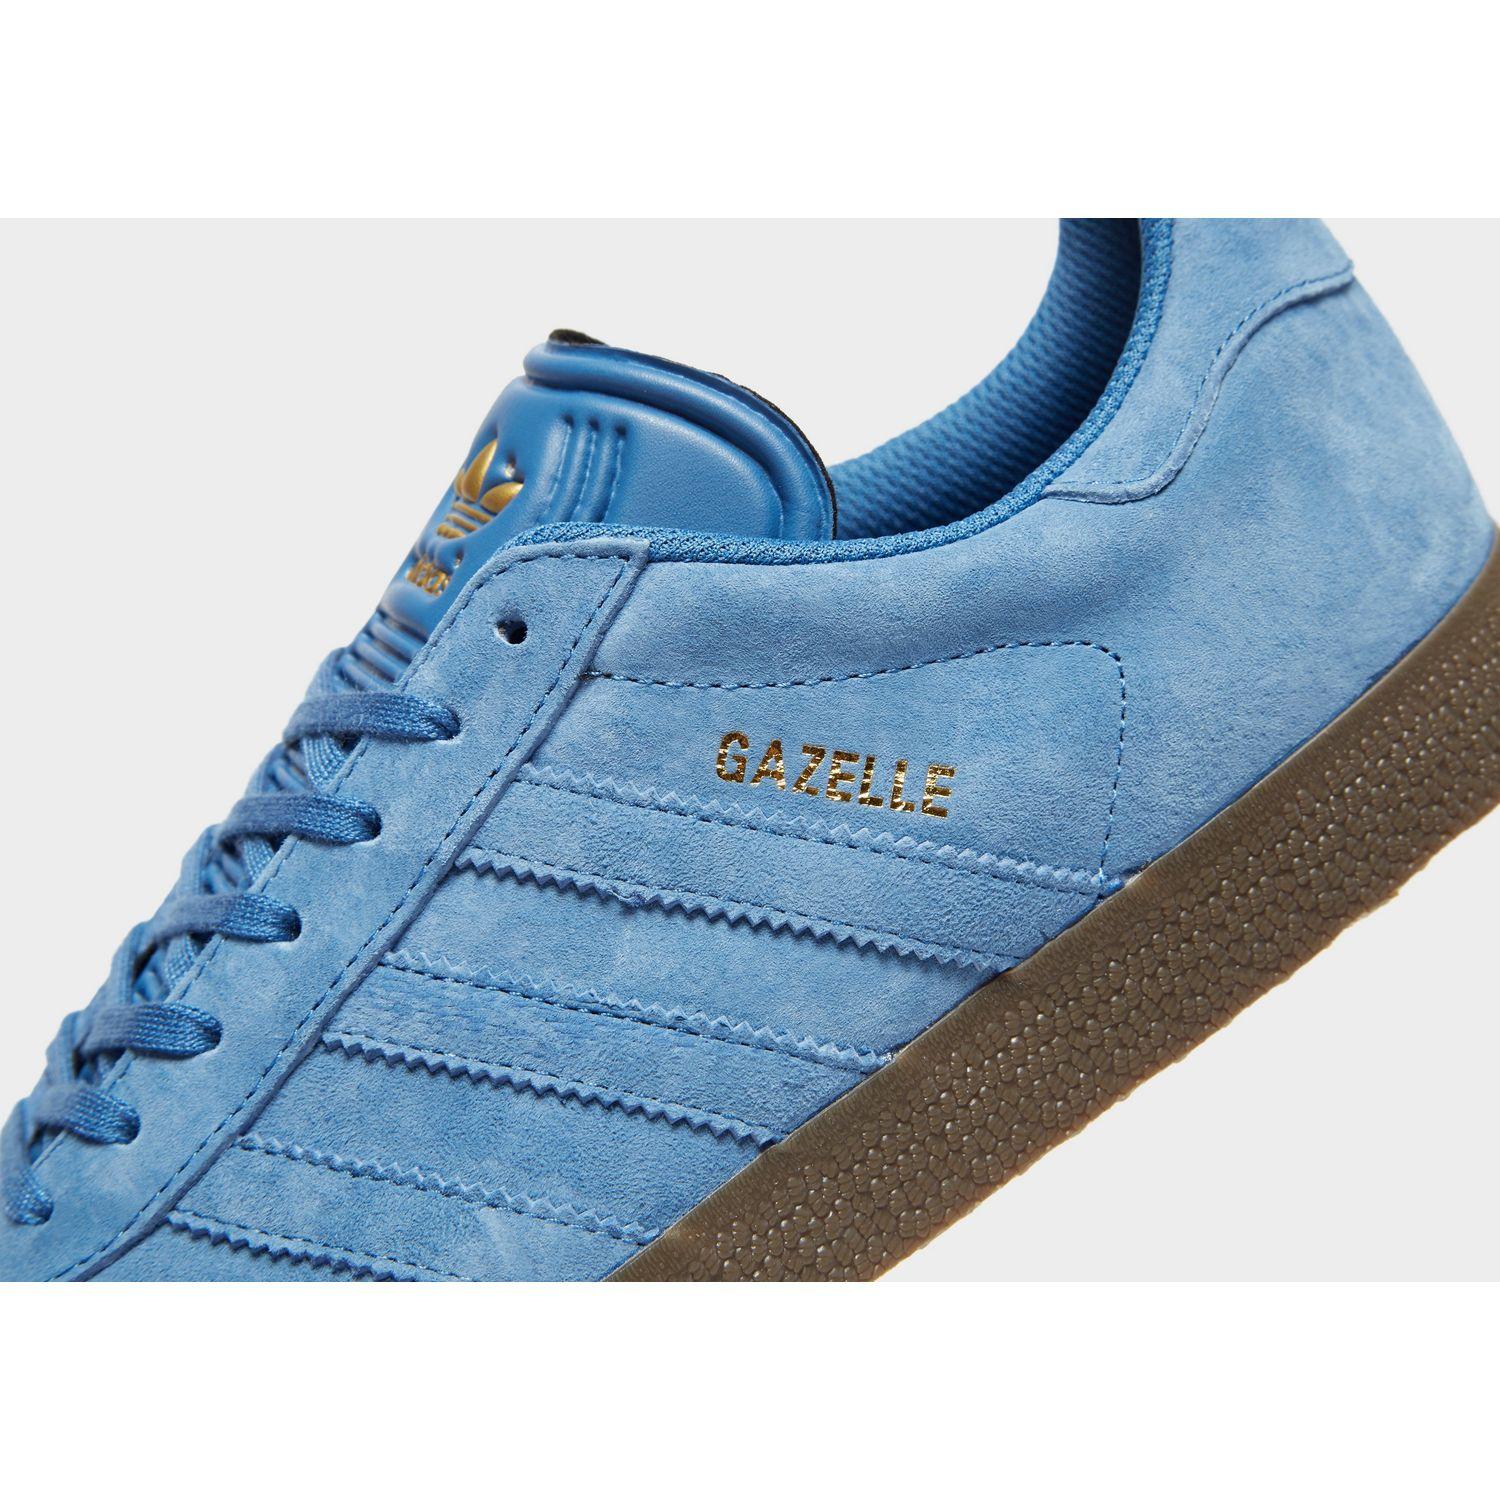 adidas gazelle all blue